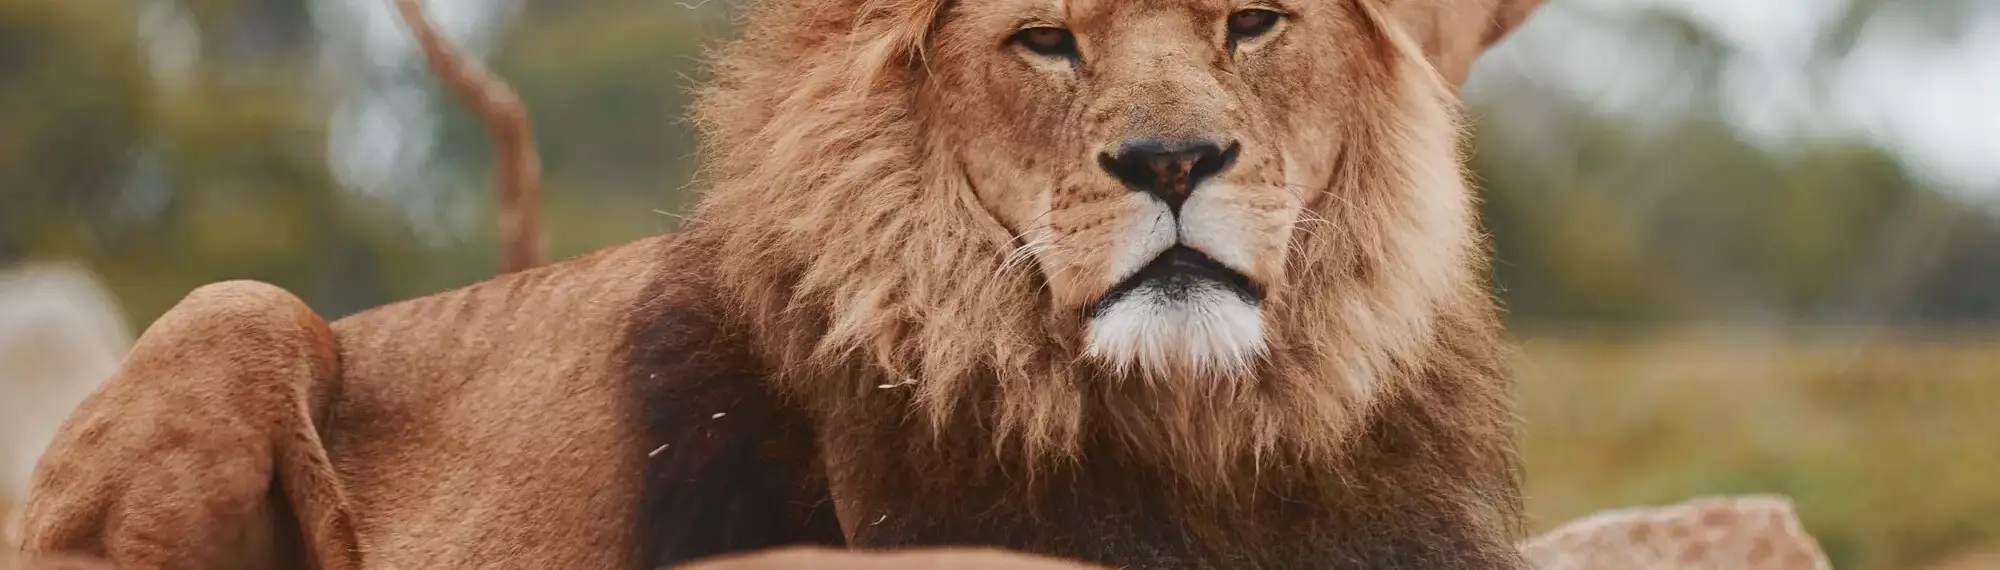 Lion looking at camera